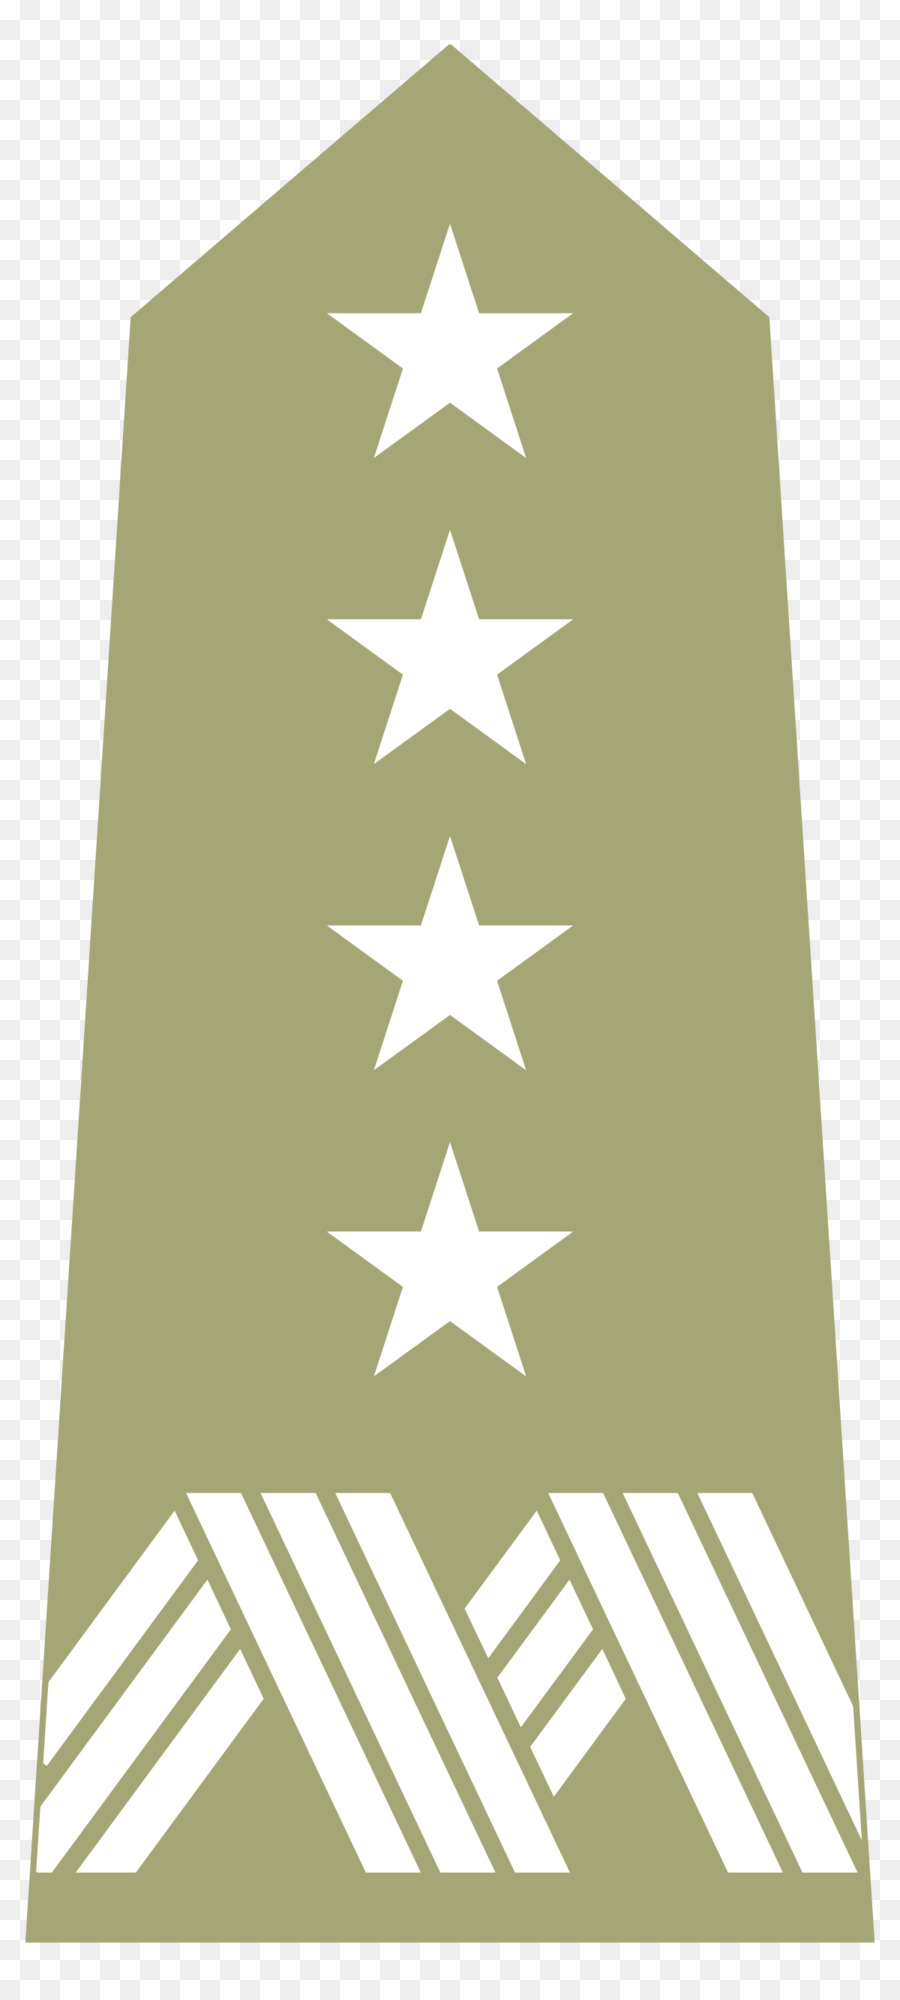 General-Lieutenant Brigadier general Four-star-Military rank rank - Allgemeine